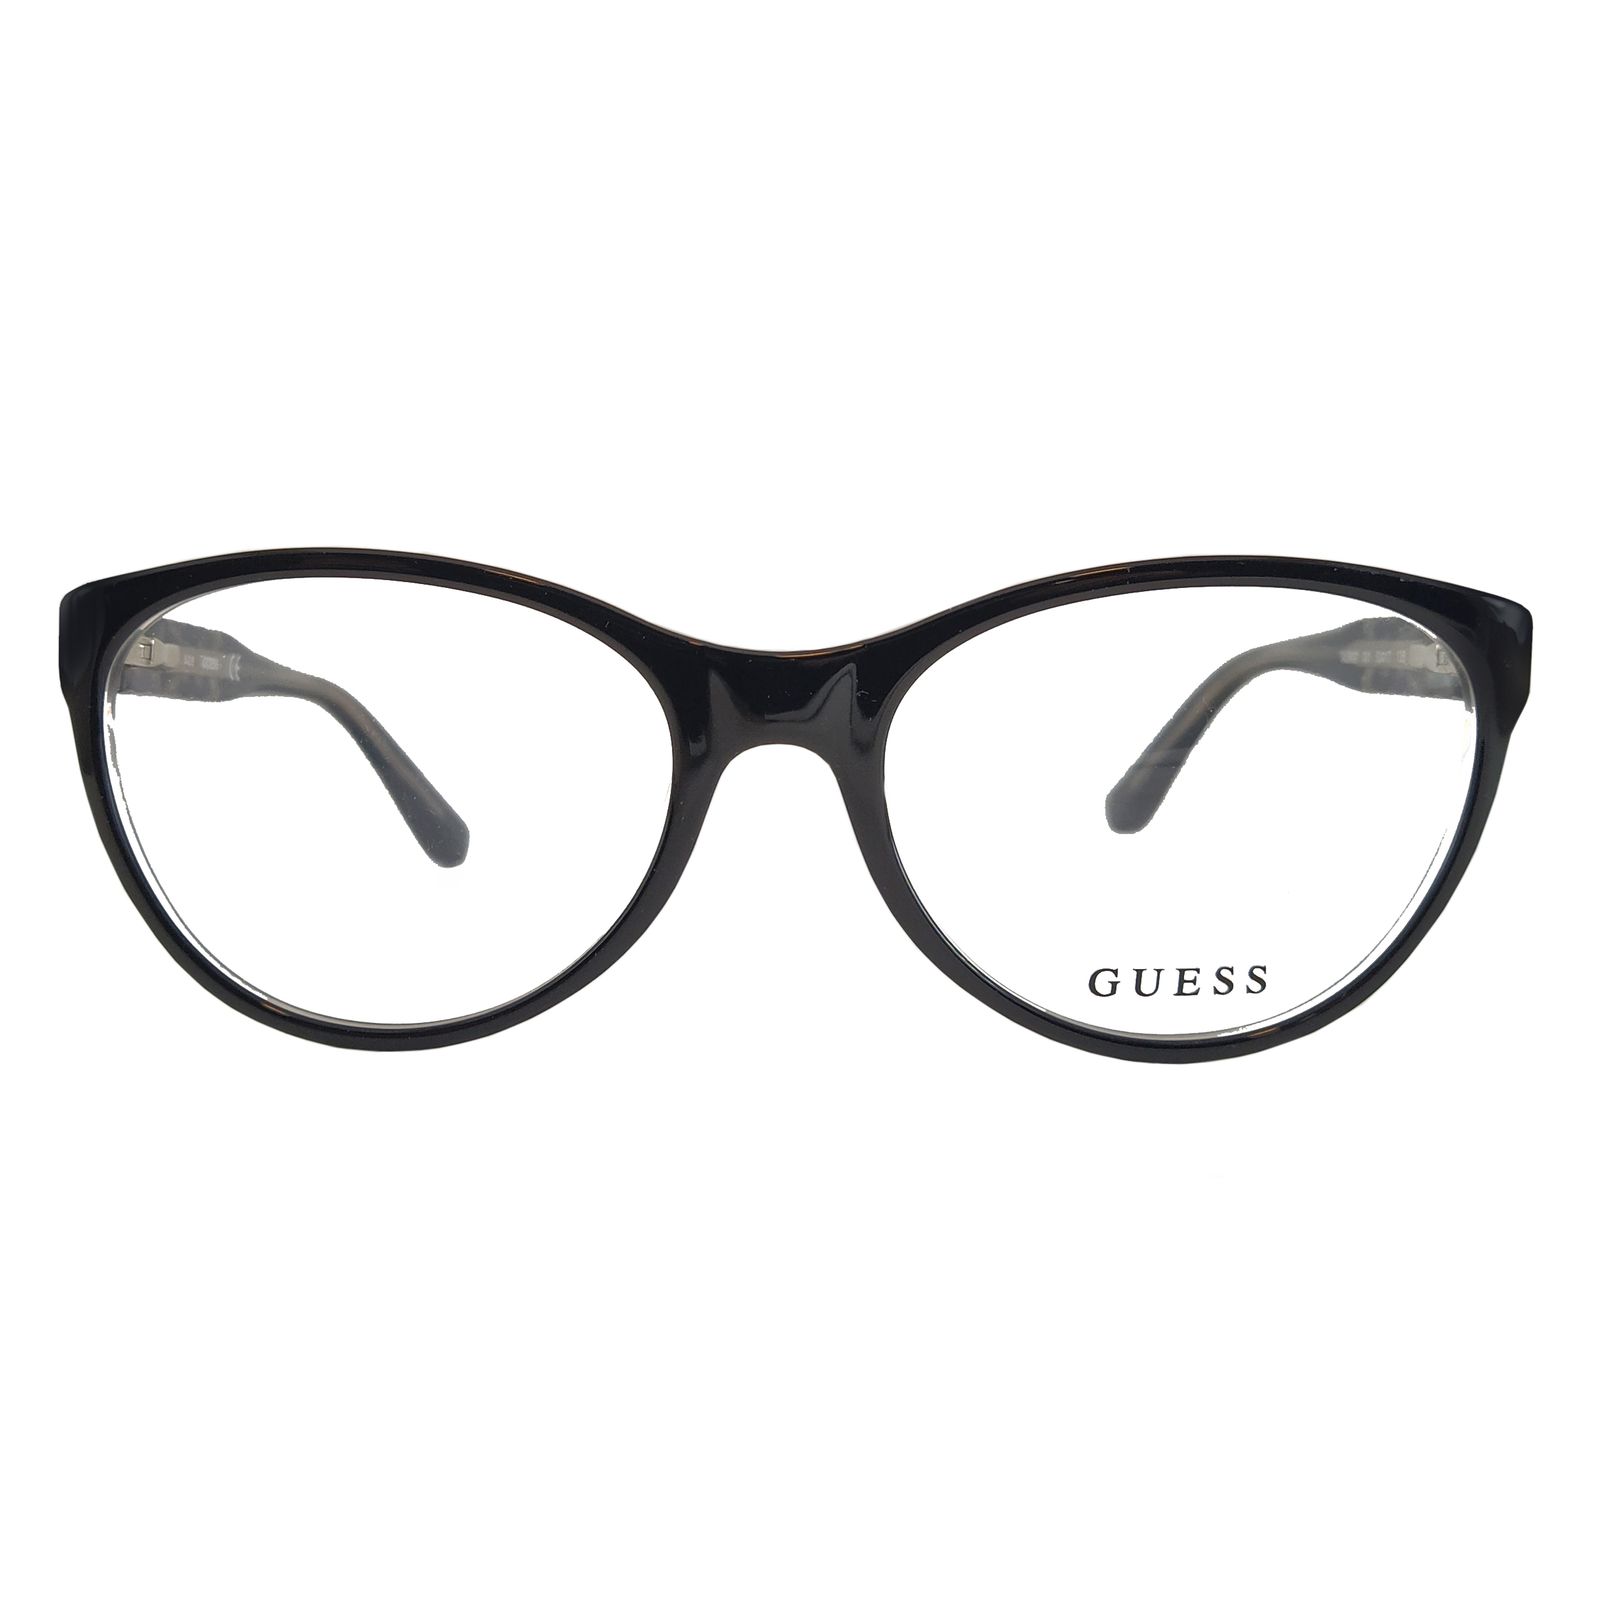 فریم عینک طبی زنانه گس مدل GU260700153 -  - 1